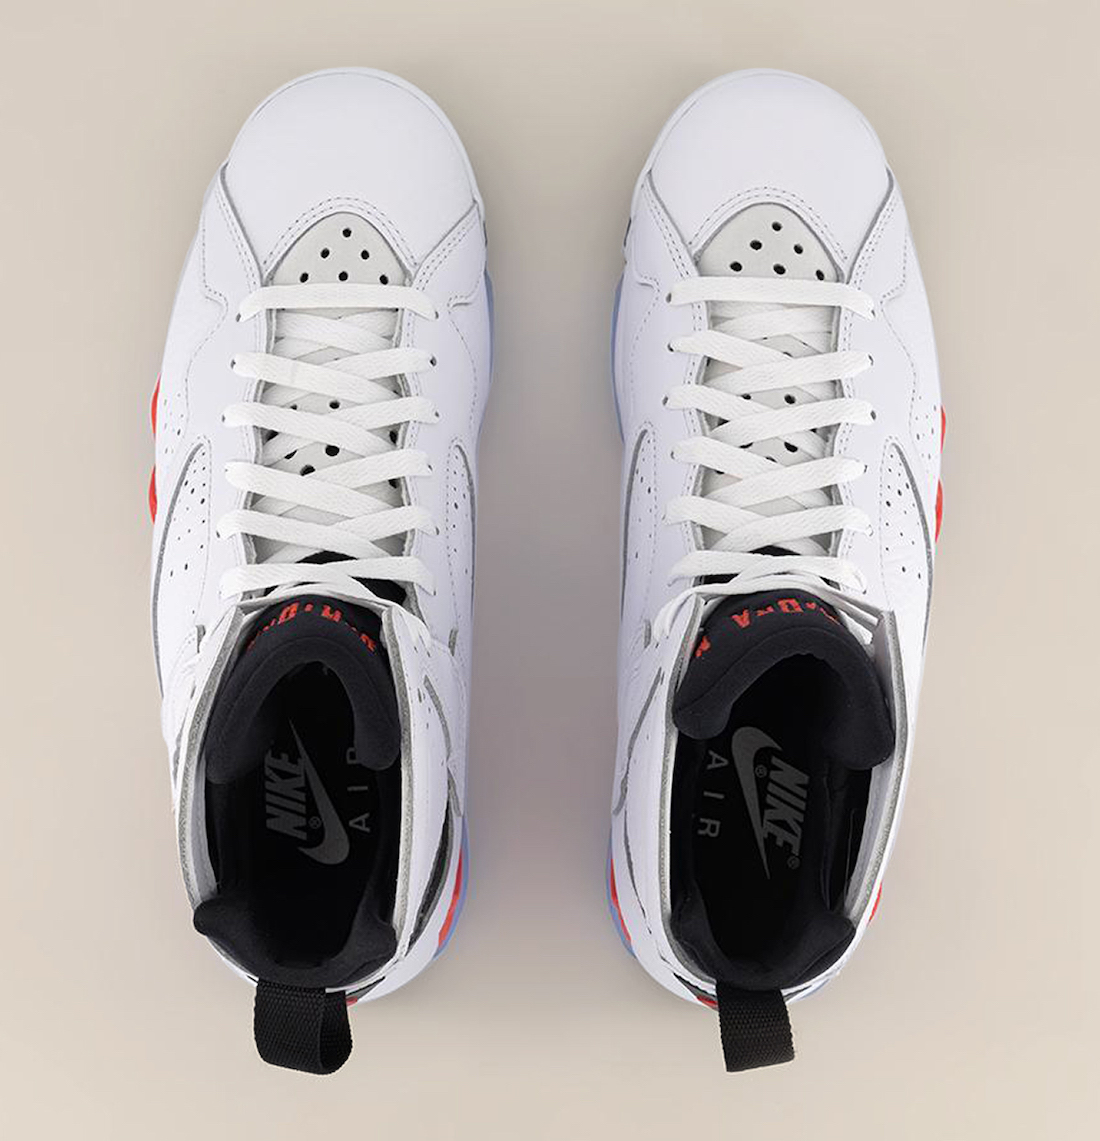 White Infrared, Jordan Brand, Jordan, Air Jordan 7 White Infrared, Air Jordan 7, Air Jordan